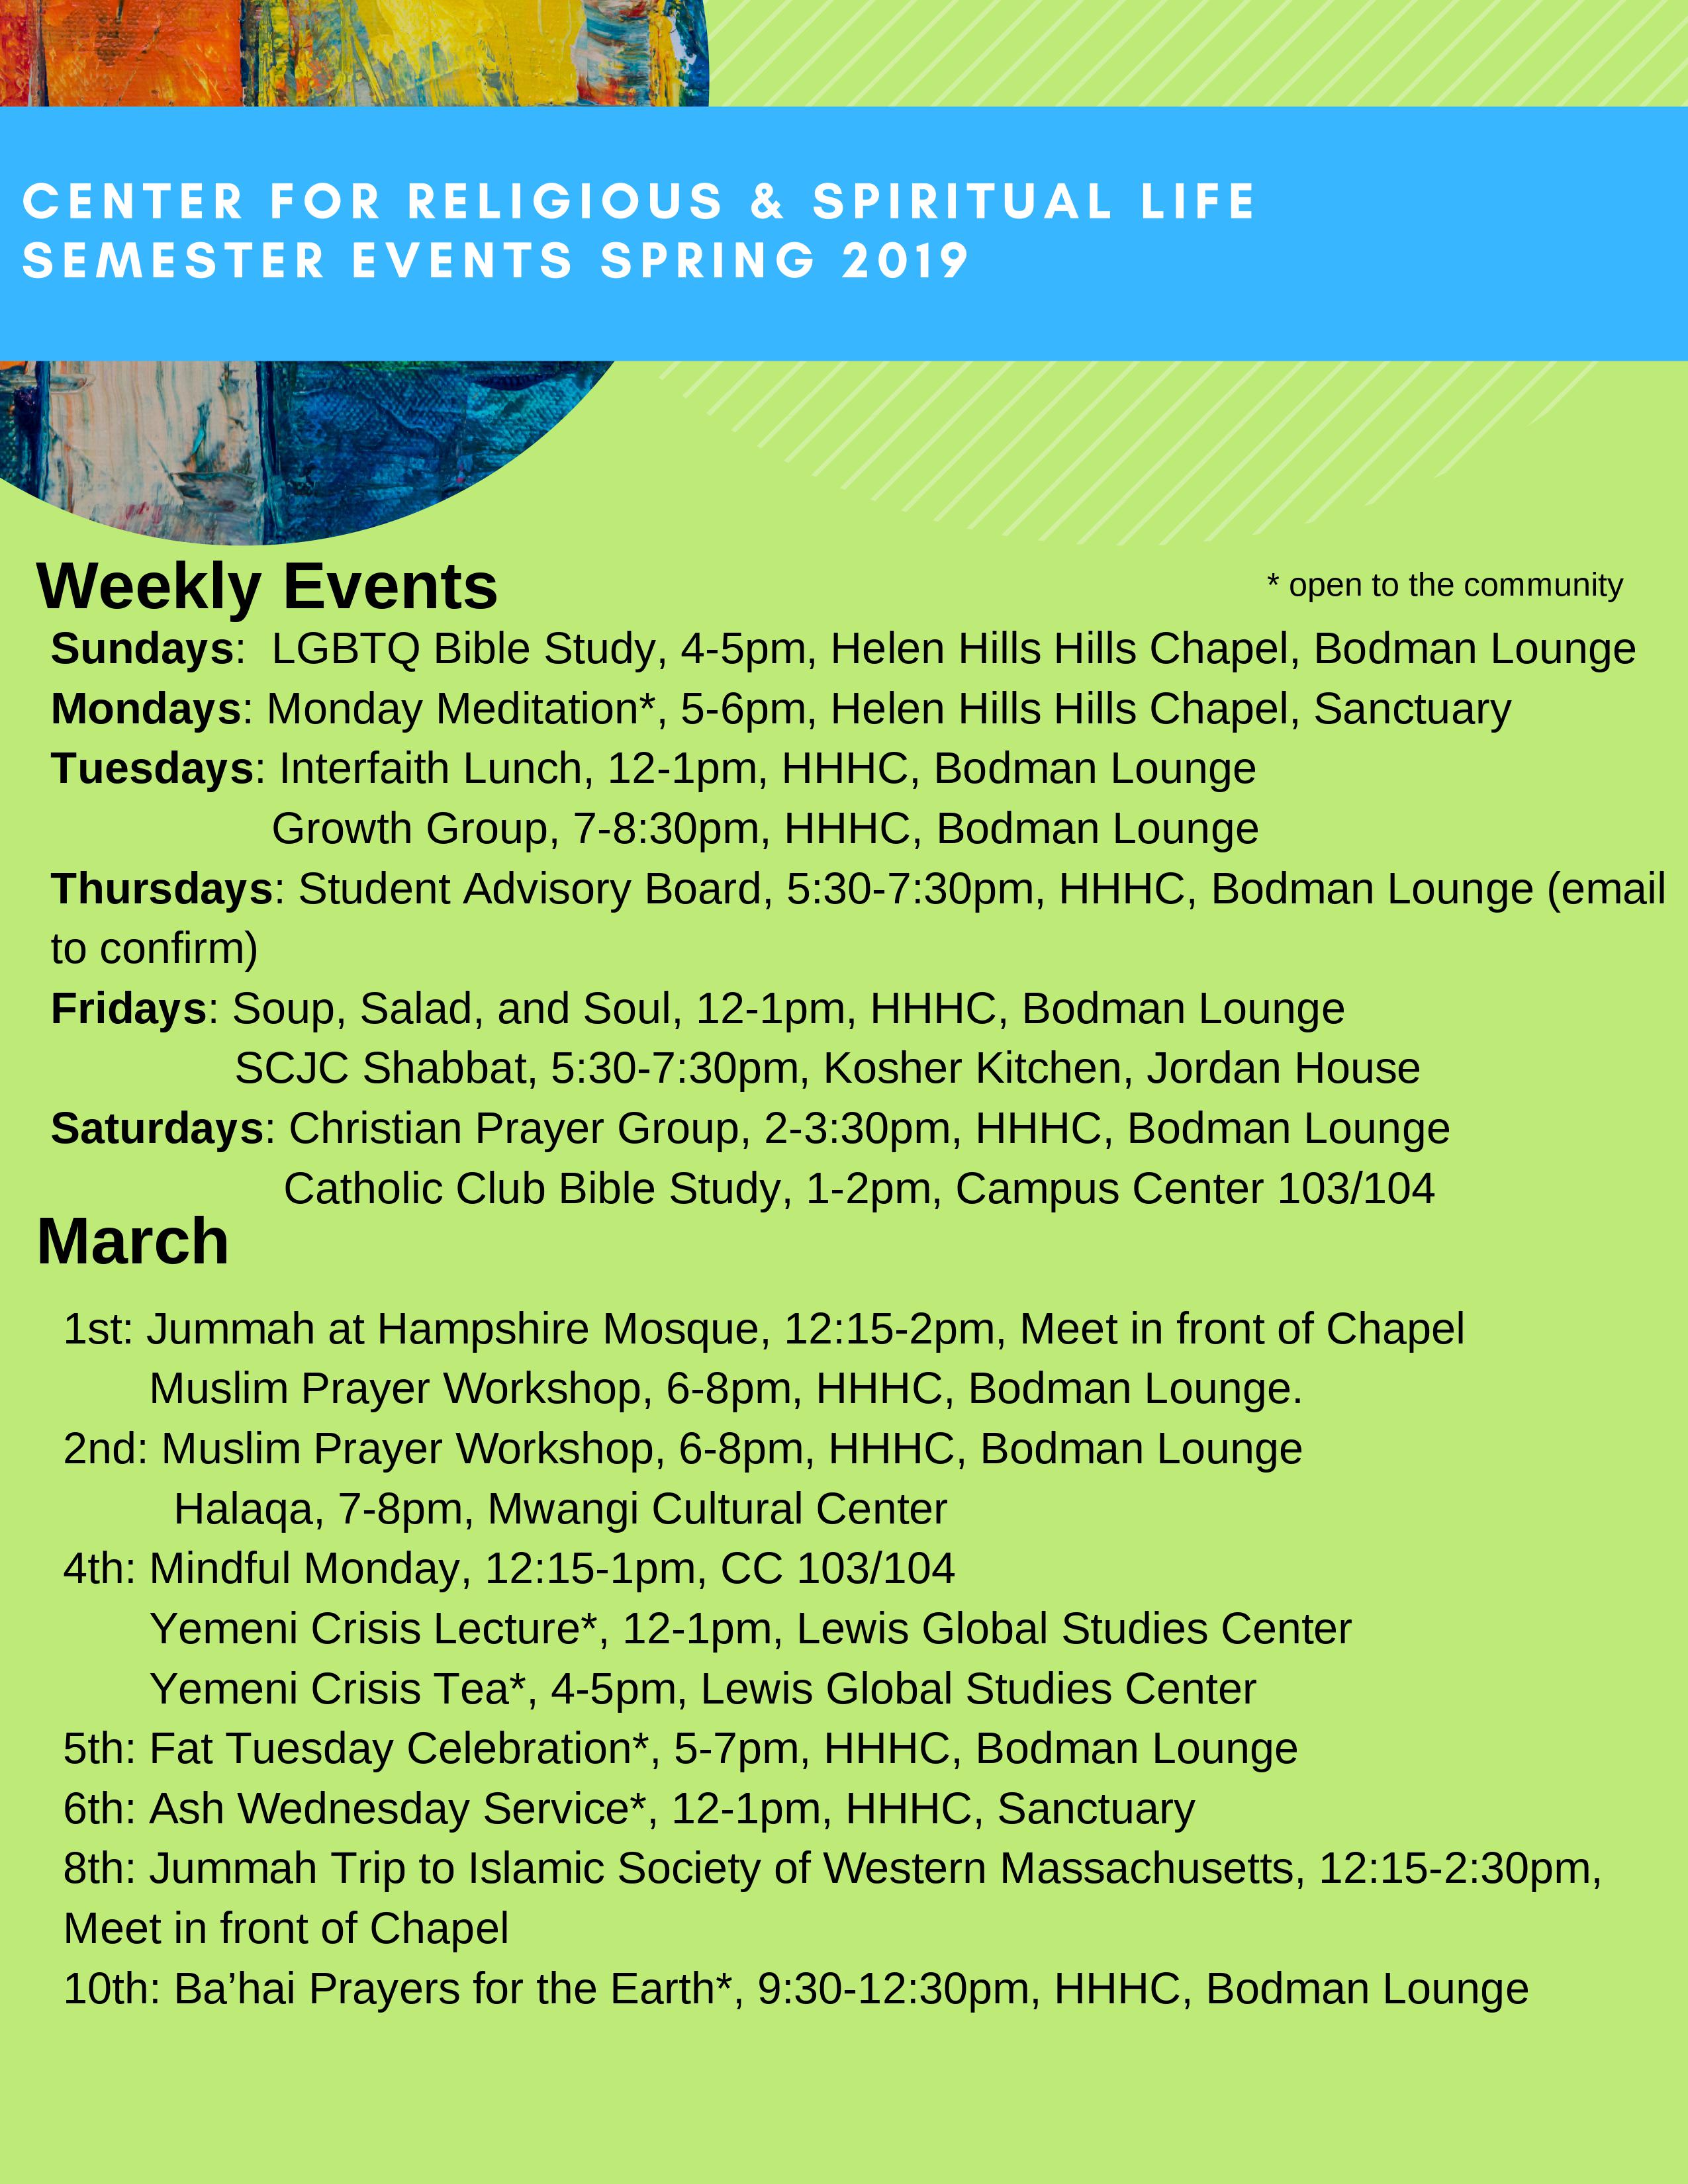 Spring 2019 Event Calendar | Center for Religious and Spiritual Life